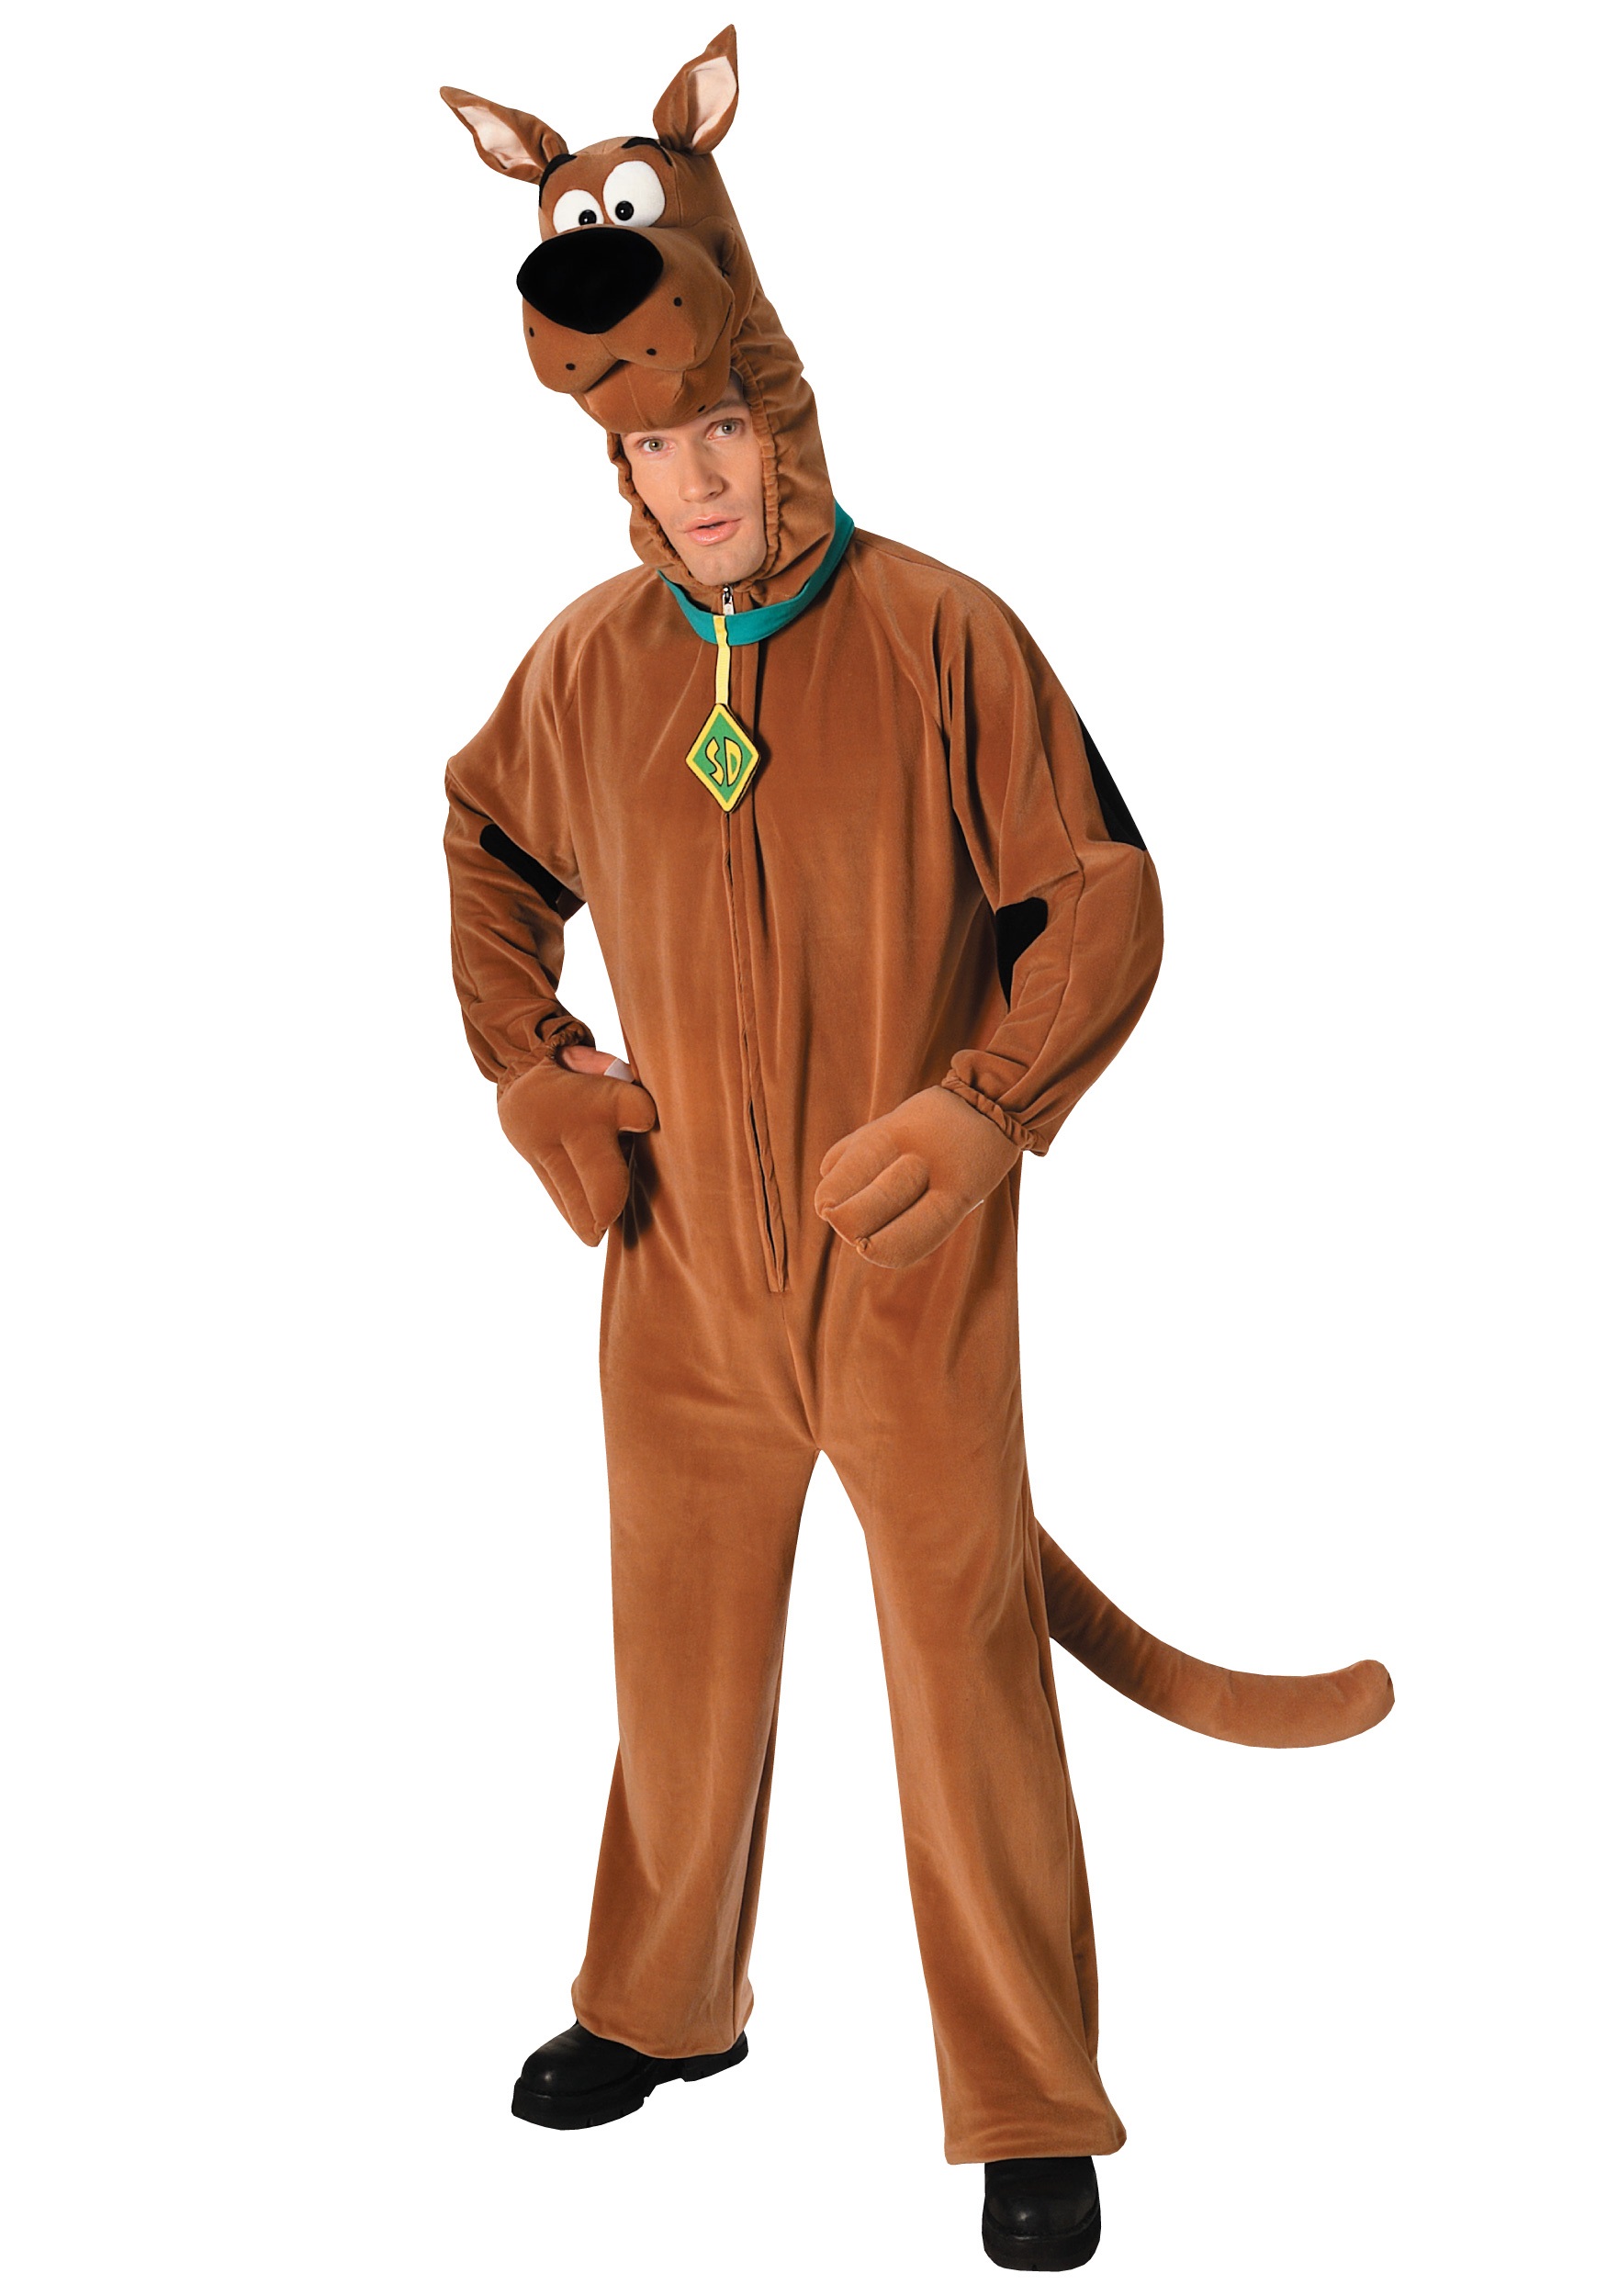 Adult Scooby Doo Costume - Scooby Doo Costume Rental